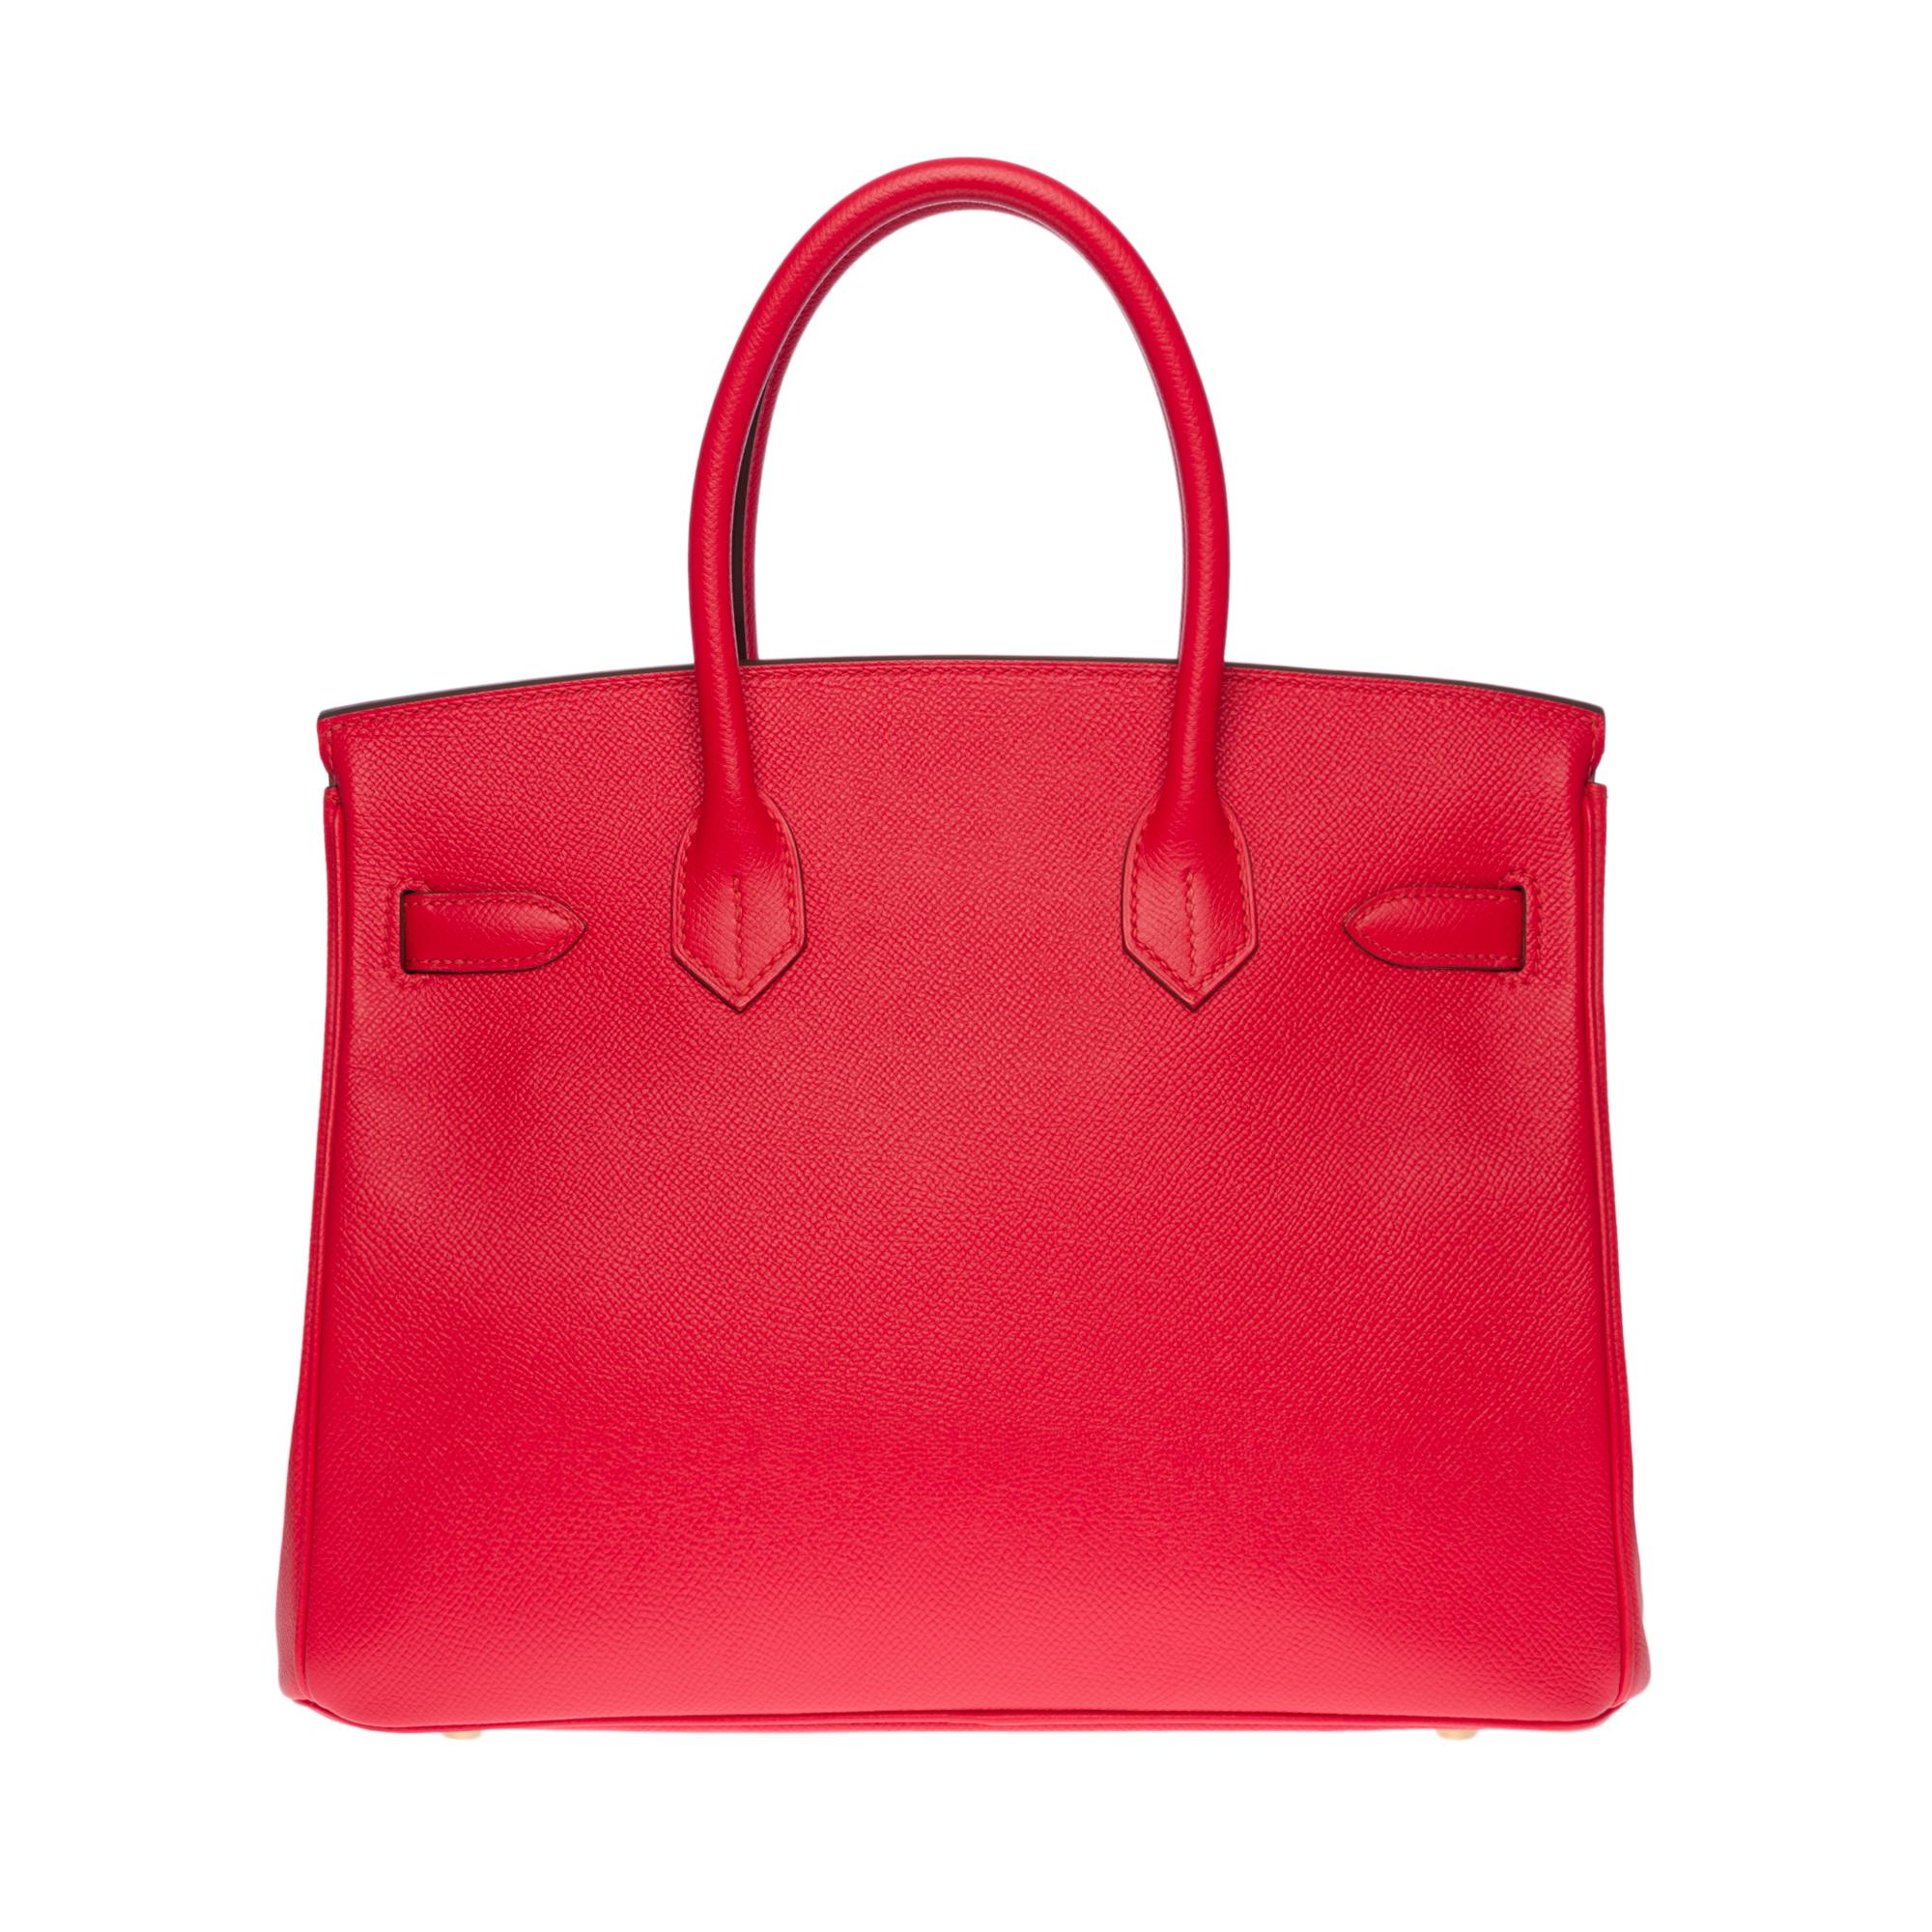 Exquis et lumineux sac à main Hermès Birkin 30, en cuir Epsom Red Heart, avec des accessoires en métal doré, une double poignée en cuir rouge permettant un portage à la main.

Fermeture à rabat
Doublure en cuir rouge, une poche zippée, une poche